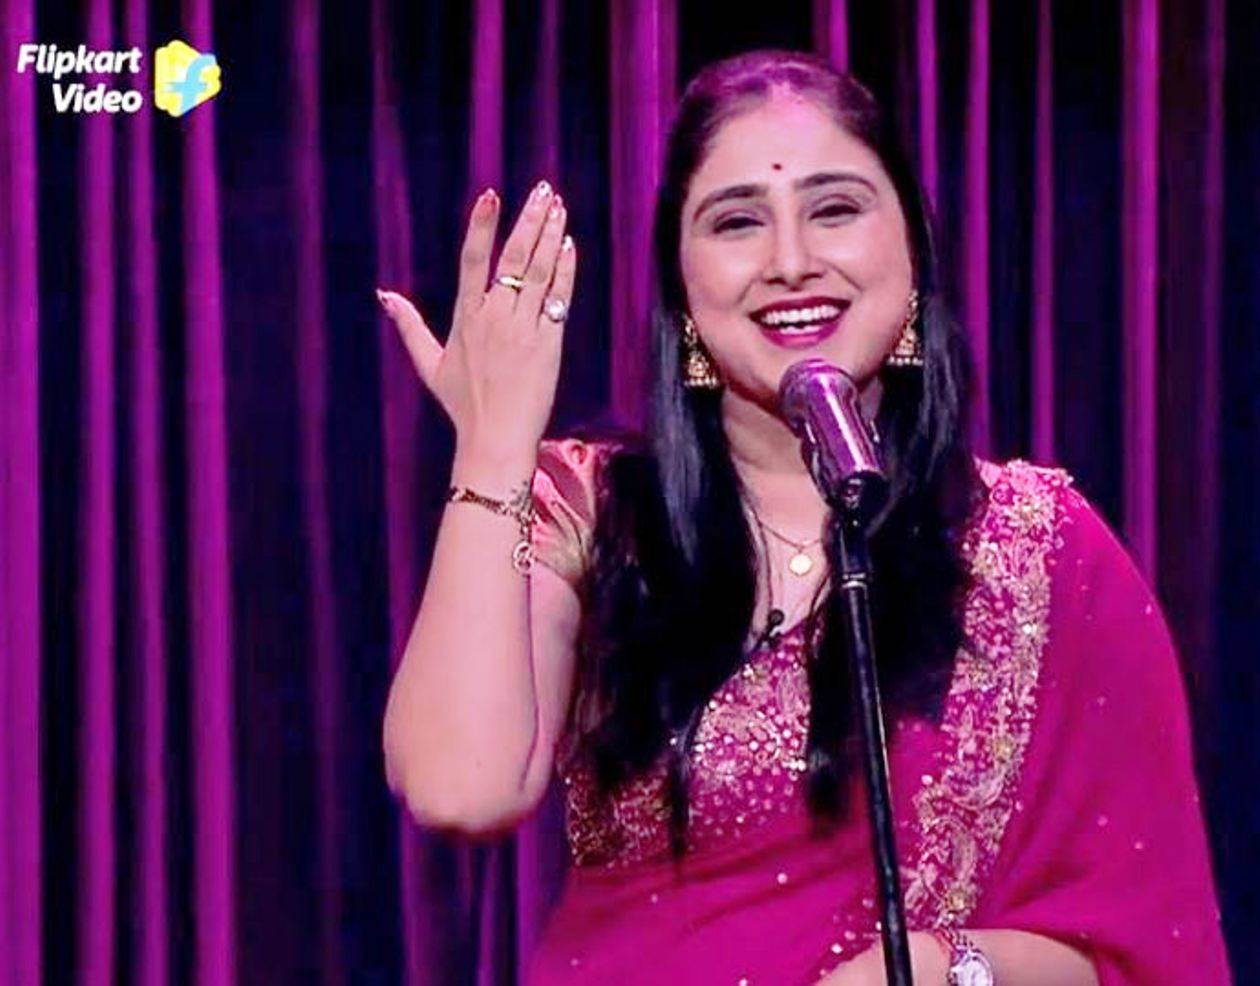 कॉमेडी शो 'सबसे फनी कौन?' में राजस्थान की बेटी भुवन मोहिनी